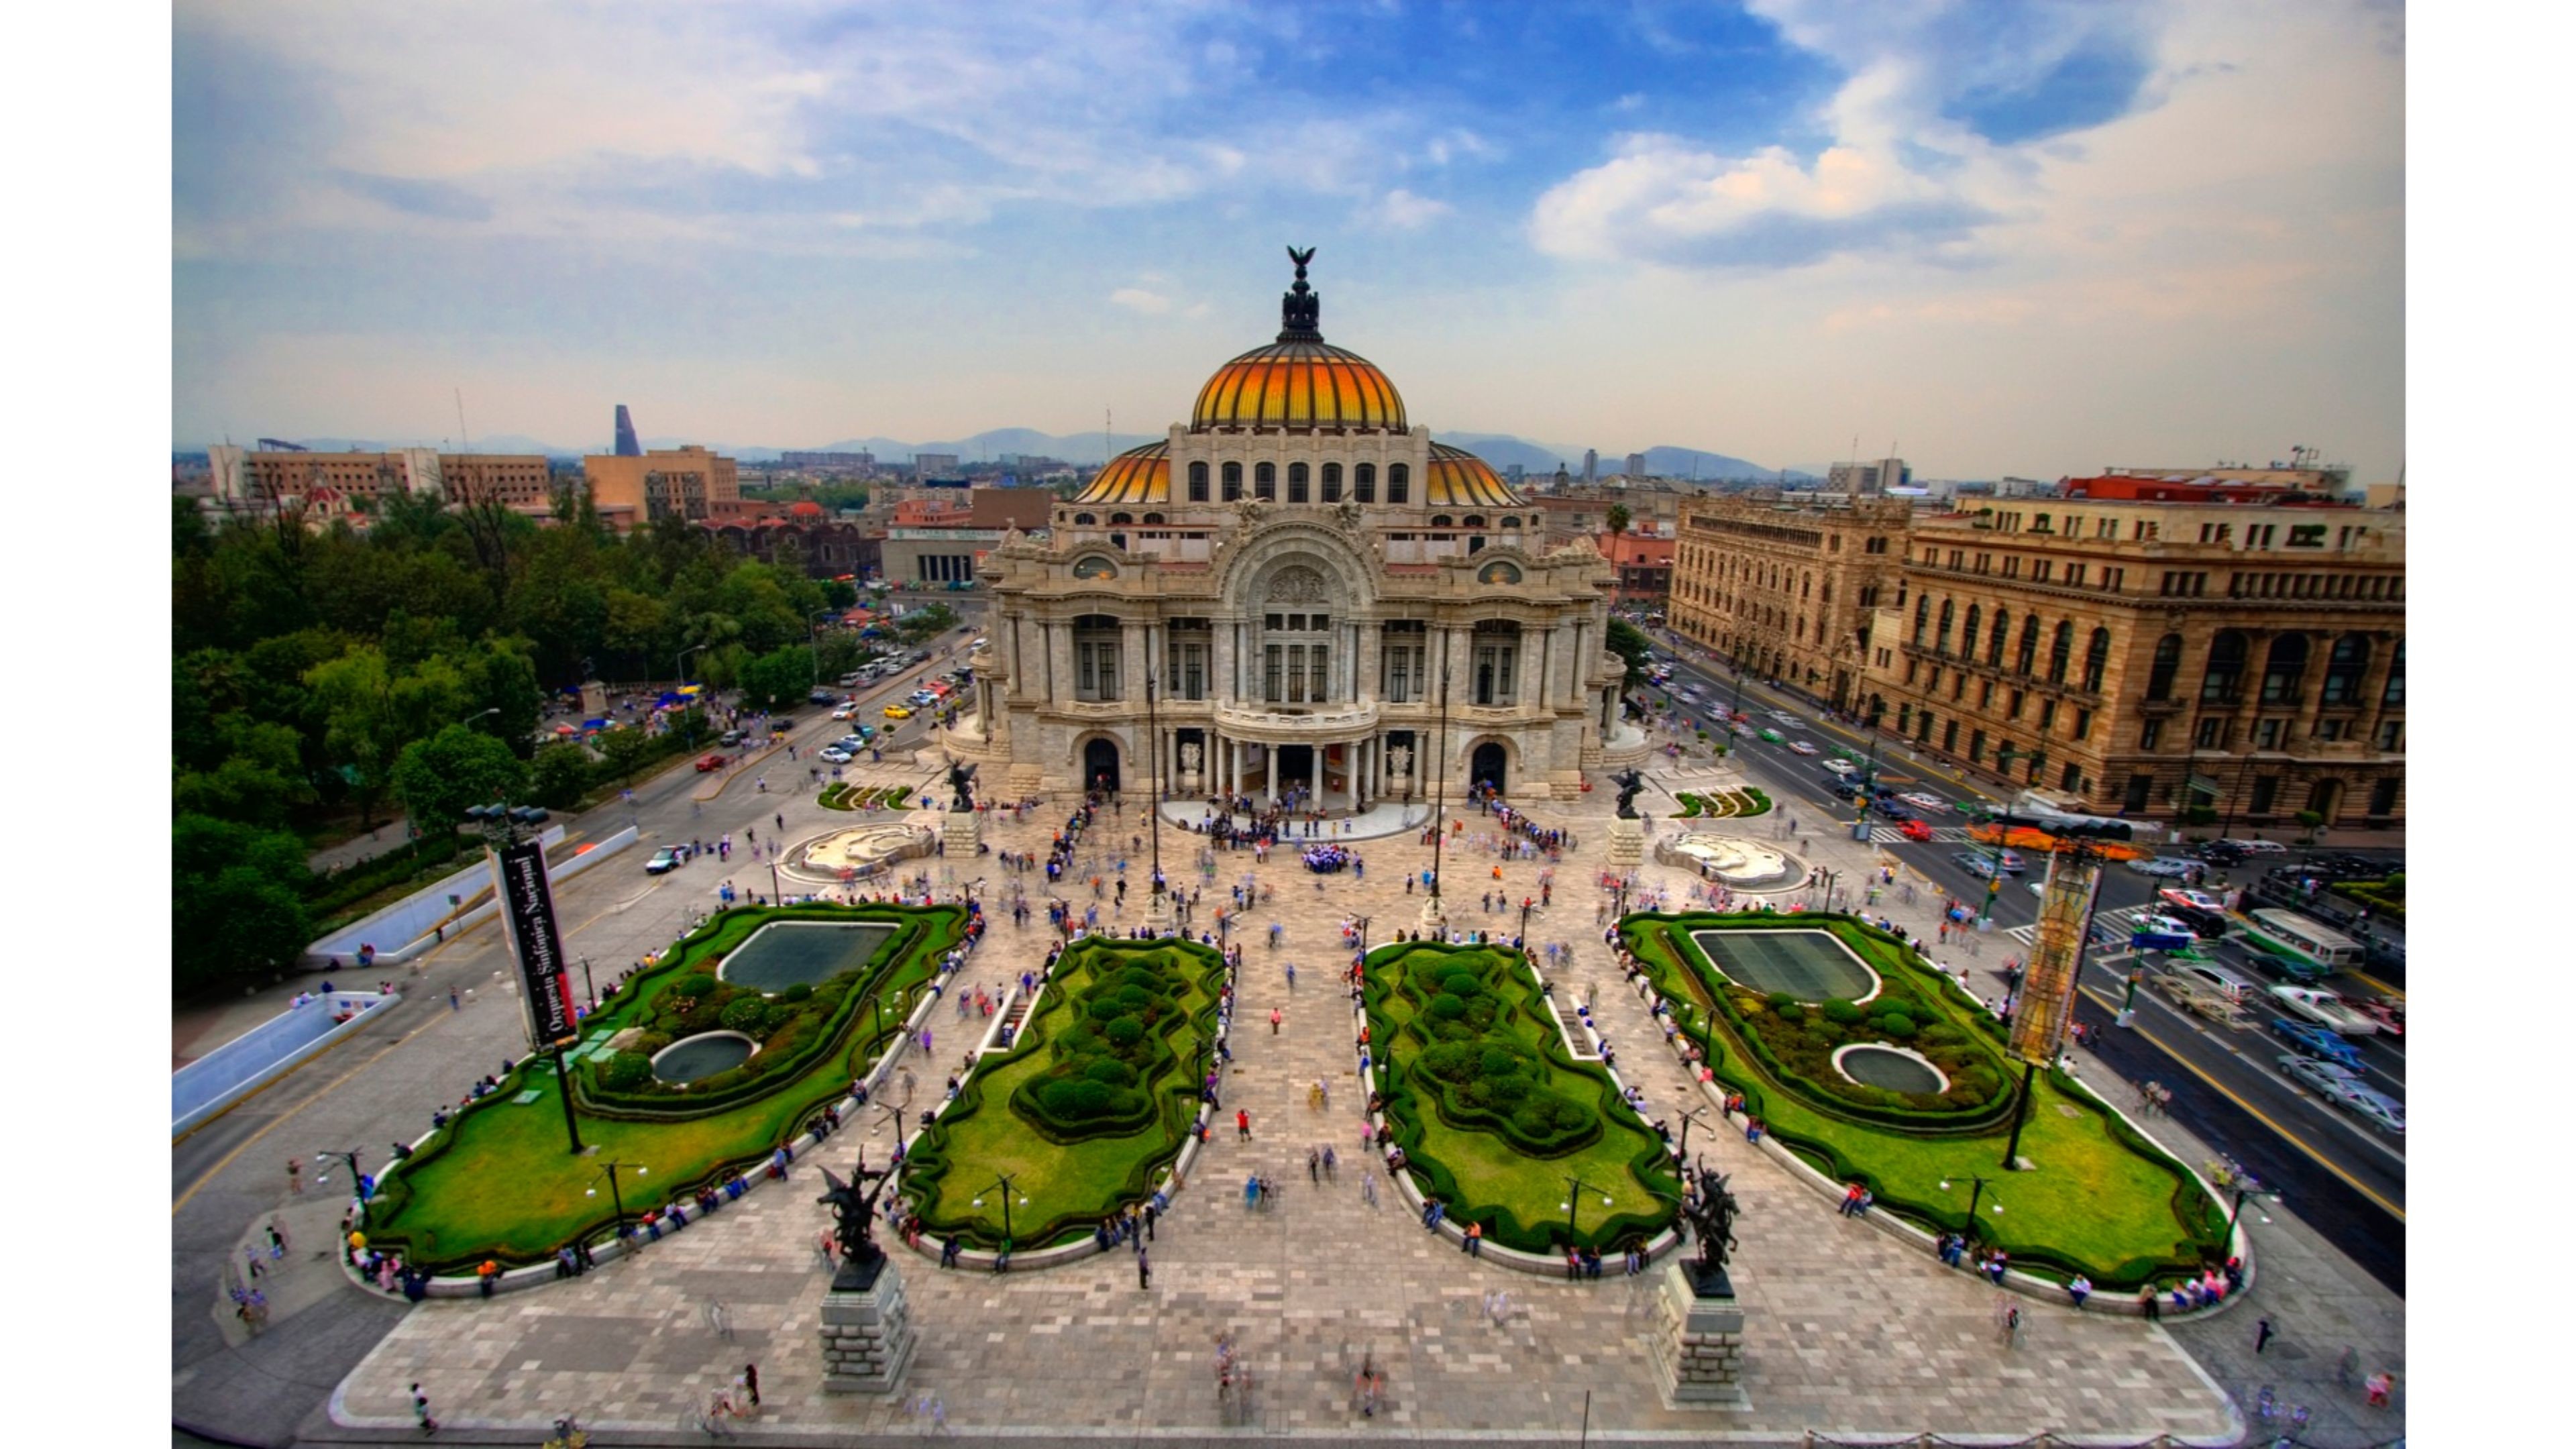 Столица страны мехико. Дворец изящных искусств (Мехико). Мексика столица Мехико. Сьюдад-де-Мехико. Мехико-Сити достопримечательности.